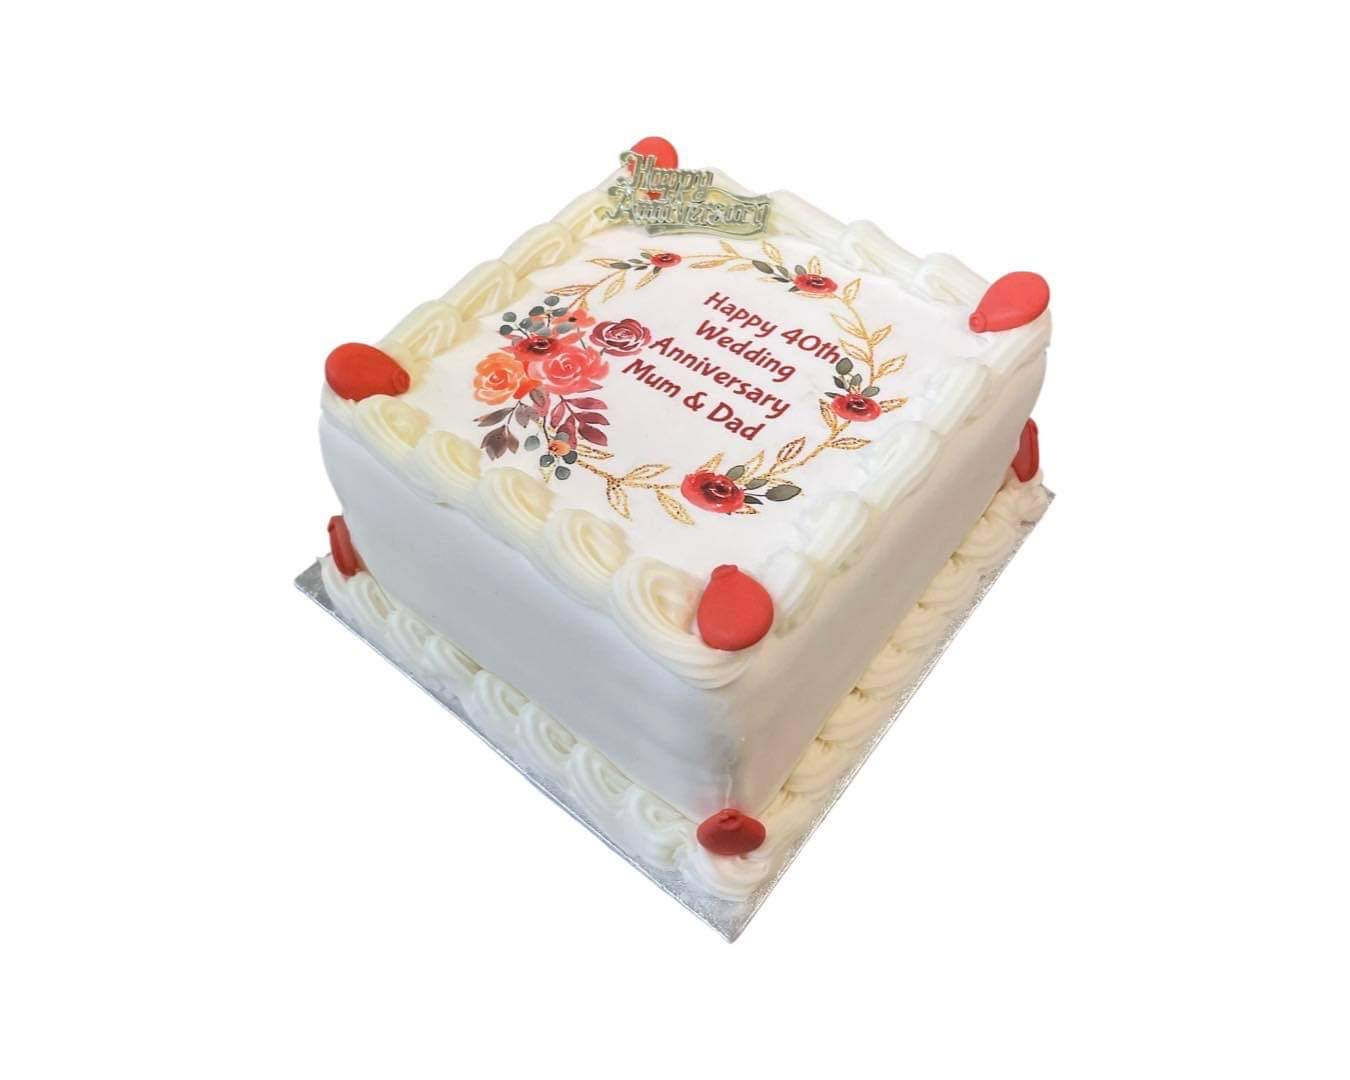 Occasion Cakes: elé Cake Co.